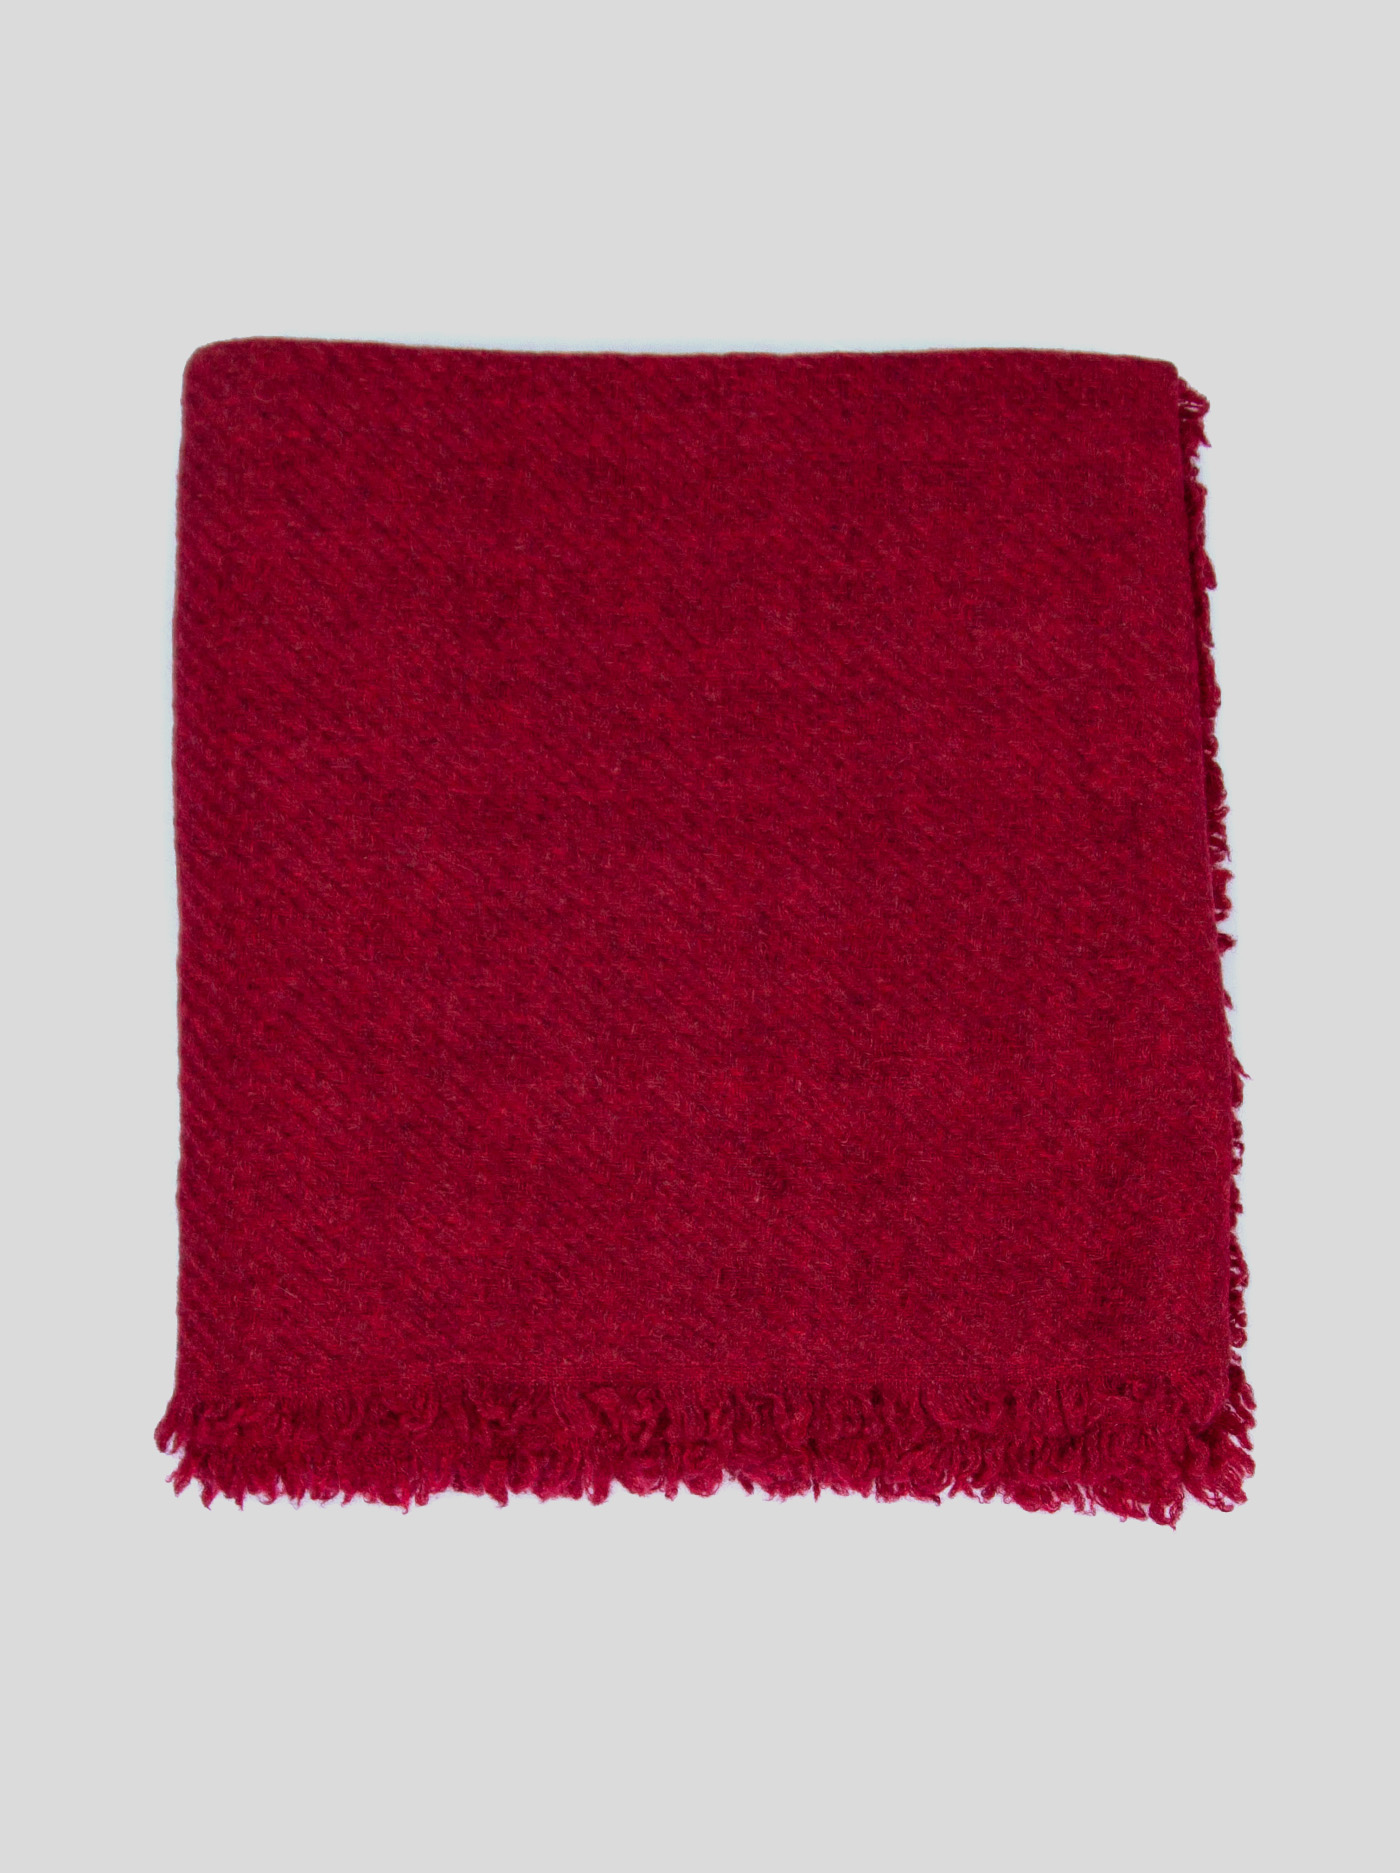 Cashmiere scarf image 4